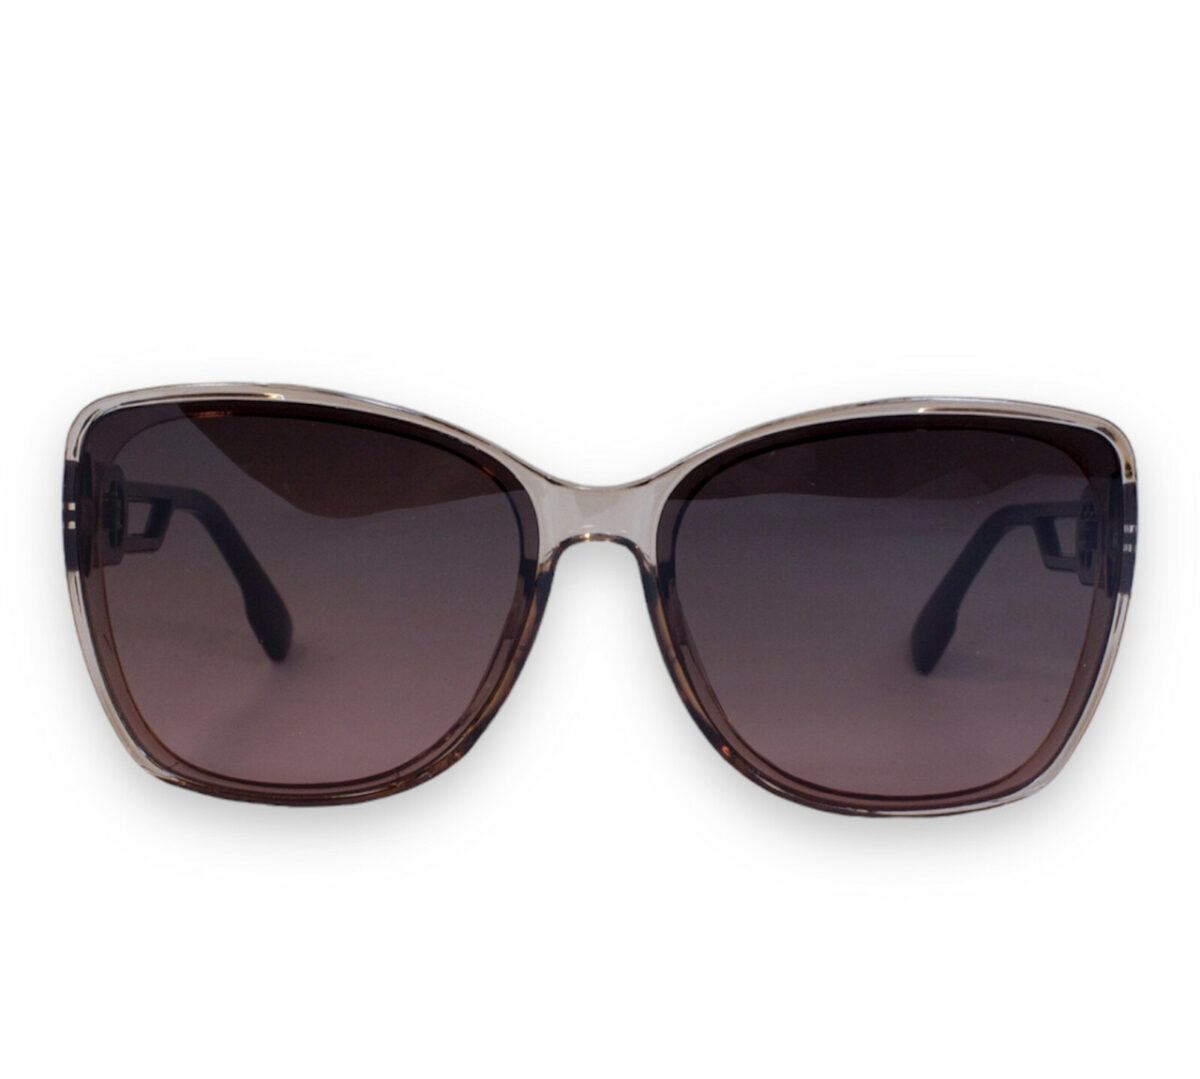 Сонцезахисні жіночі окуляри 2213-3 topseason Cardeo